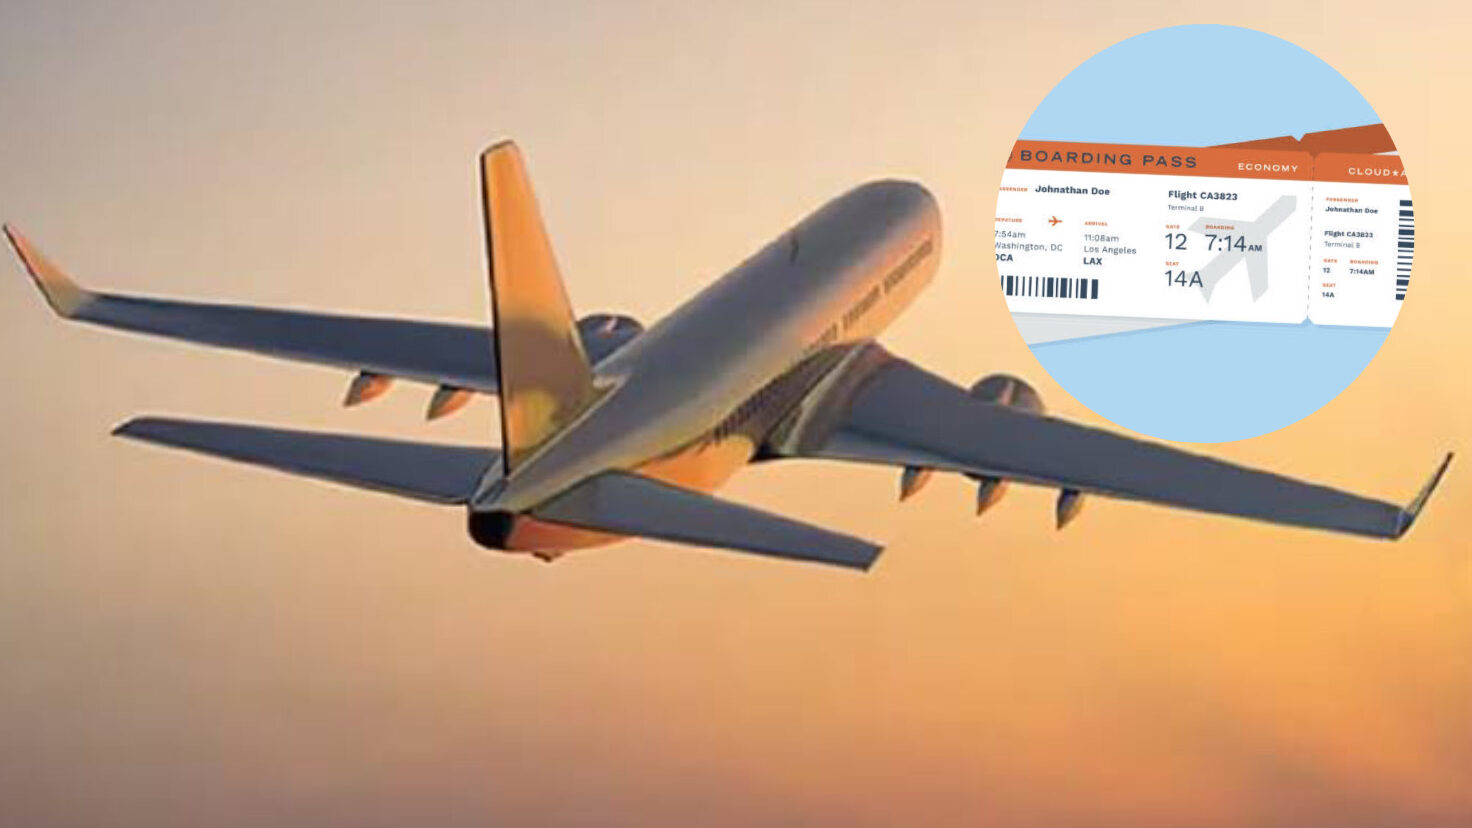 aeroplane tickets at lowest price,cheap flight tickets। हफ़्ते के 'इस' दिन मिलेंगे हवाई जहाज के टिकट सस्ते मैं जल्दी खरीदे।